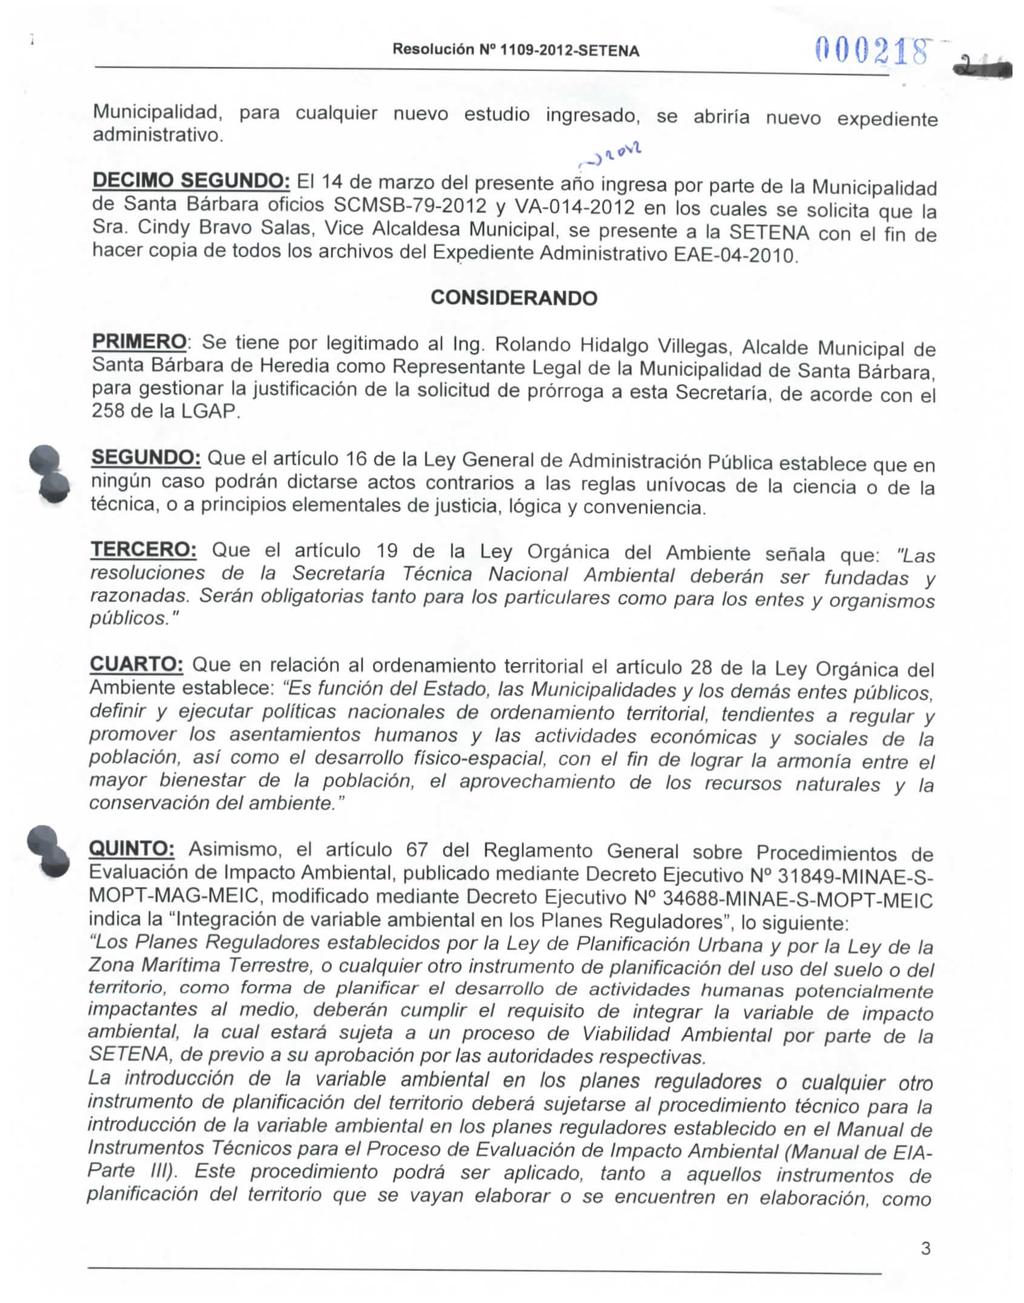 Resolución N 1109-2012-SETENA 00021H" administrativo.